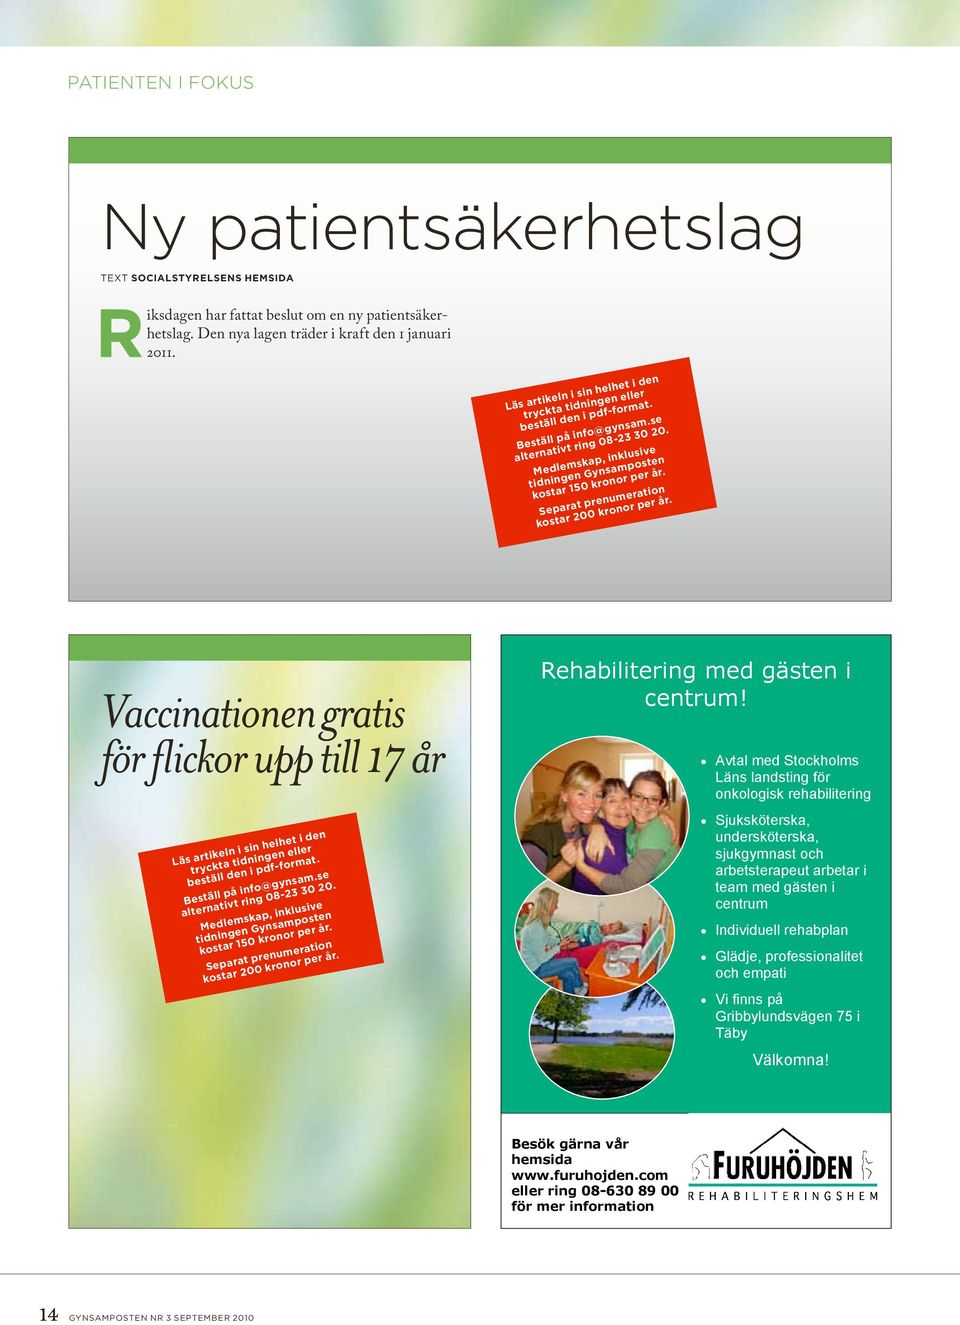 Avtal med Stockholms Läns landsting för onkologisk rehabilitering Sjuksköterska, undersköterska, sjukgymnast och arbetsterapeut arbetar i team med gästen i centrum